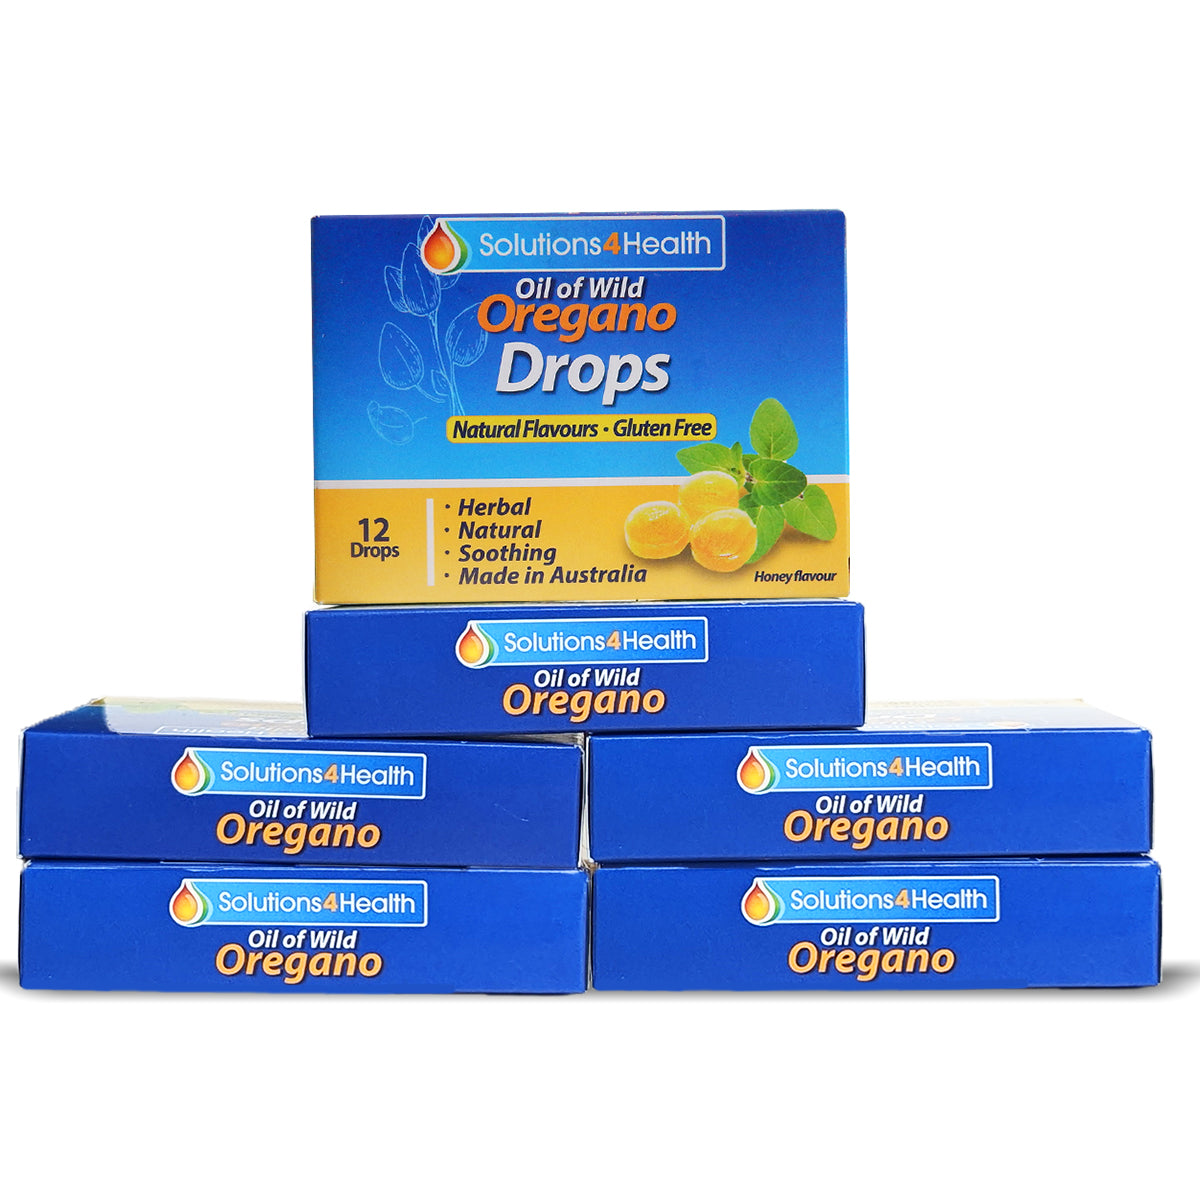 12 Drops – Oil of Wild Oregano Drops - Twin Pack